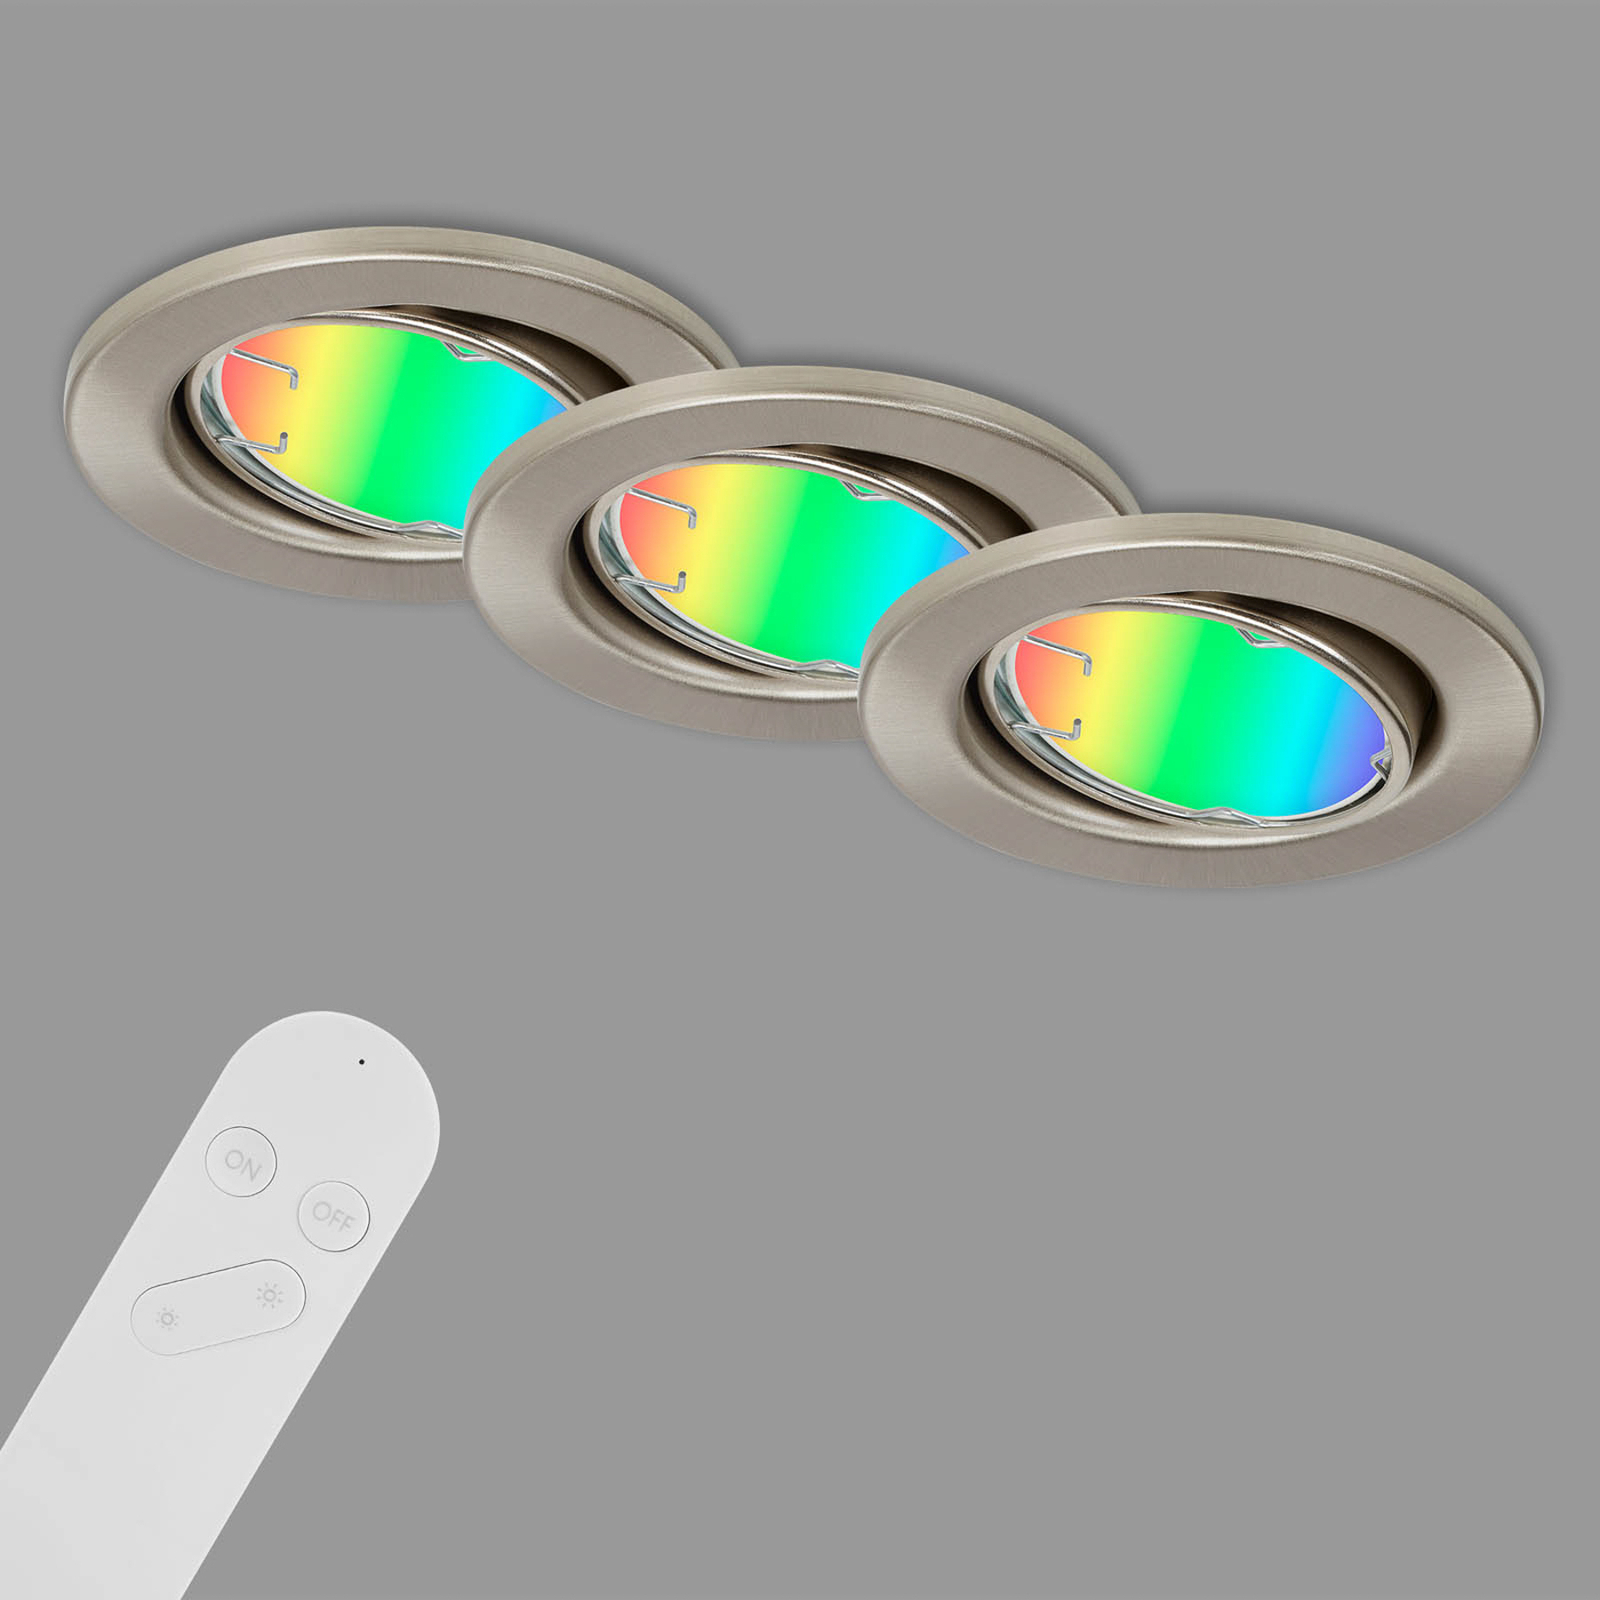 LED-es süllyesztett lámpa Fit Move S, CCT RGB 3gang, nikkel